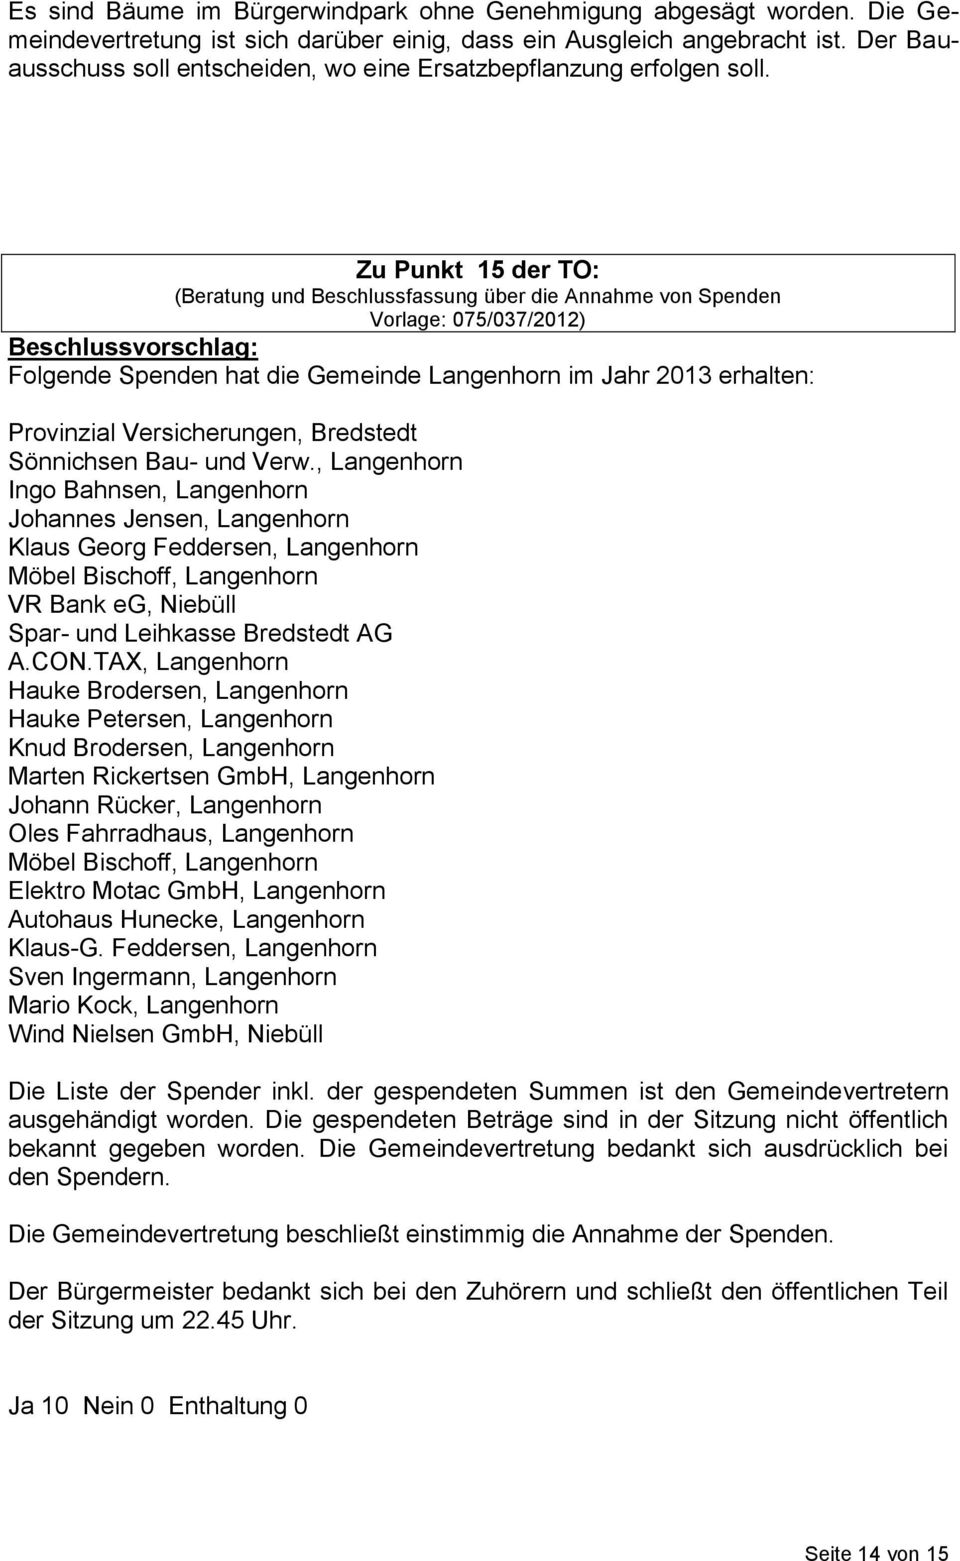 Zu Punkt 15 der TO: (Beratung und Beschlussfassung über die Annahme von Spenden Vorlage: 075/037/2012) Beschlussvorschlag: Folgende Spenden hat die Gemeinde Langenhorn im Jahr 2013 erhalten: